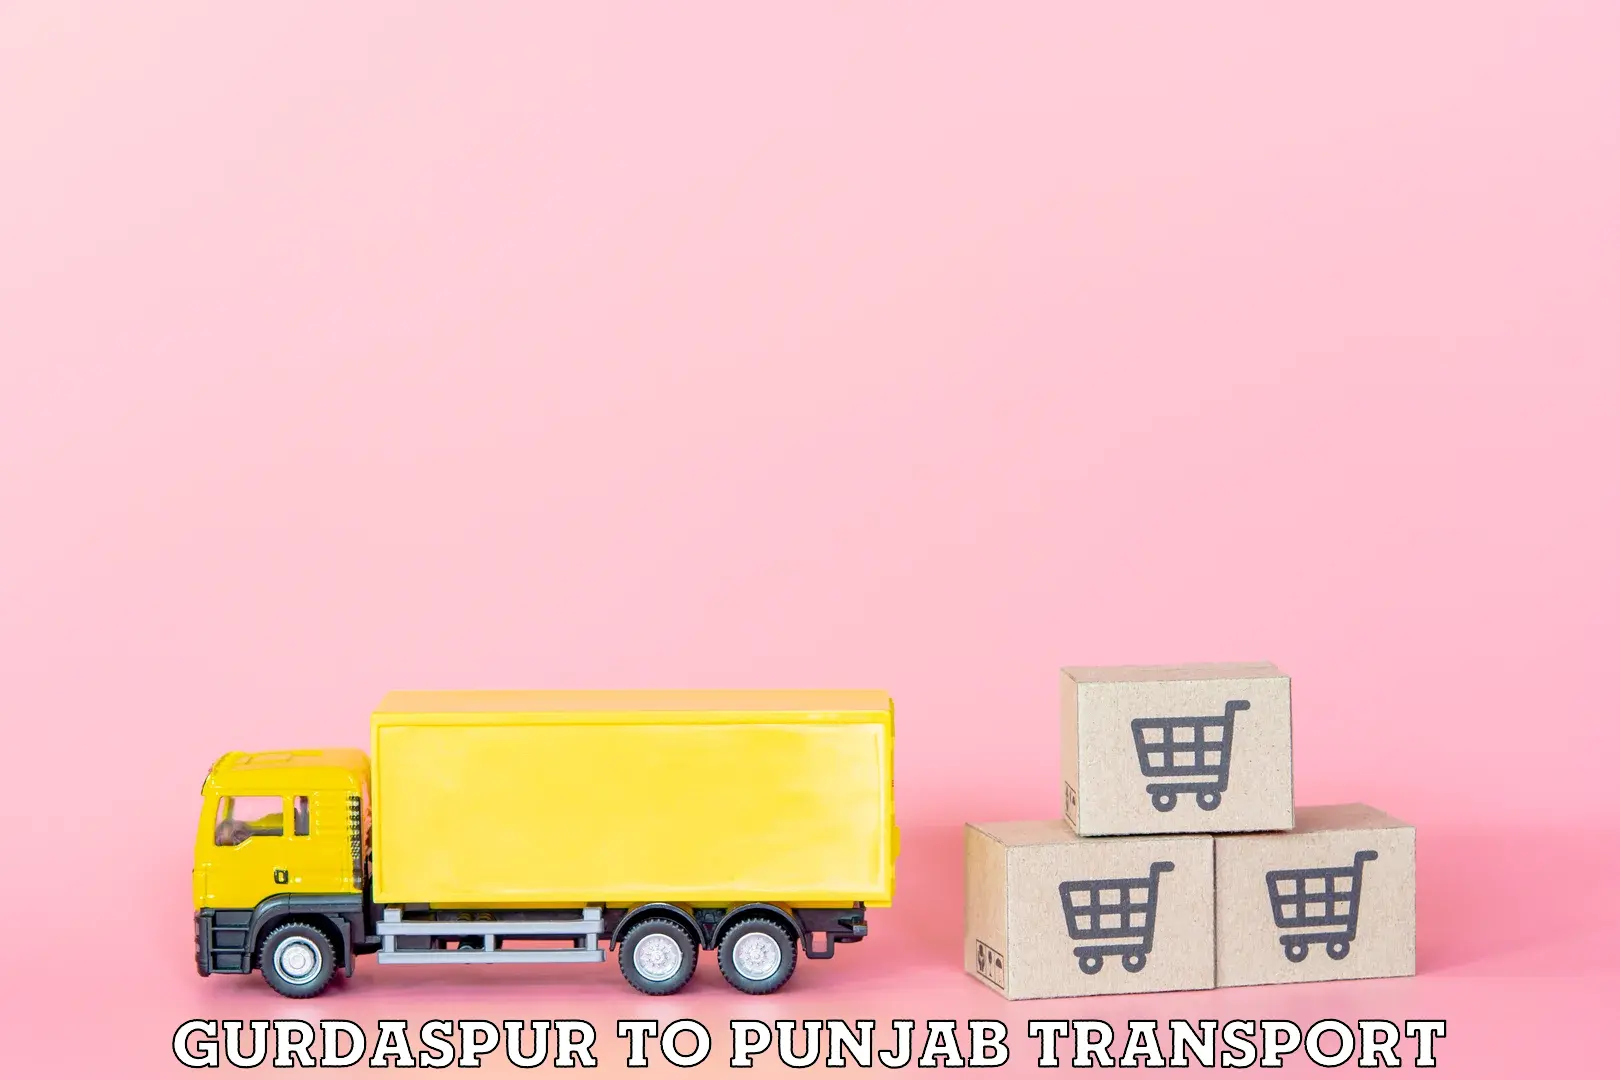 Transport in sharing Gurdaspur to Punjab